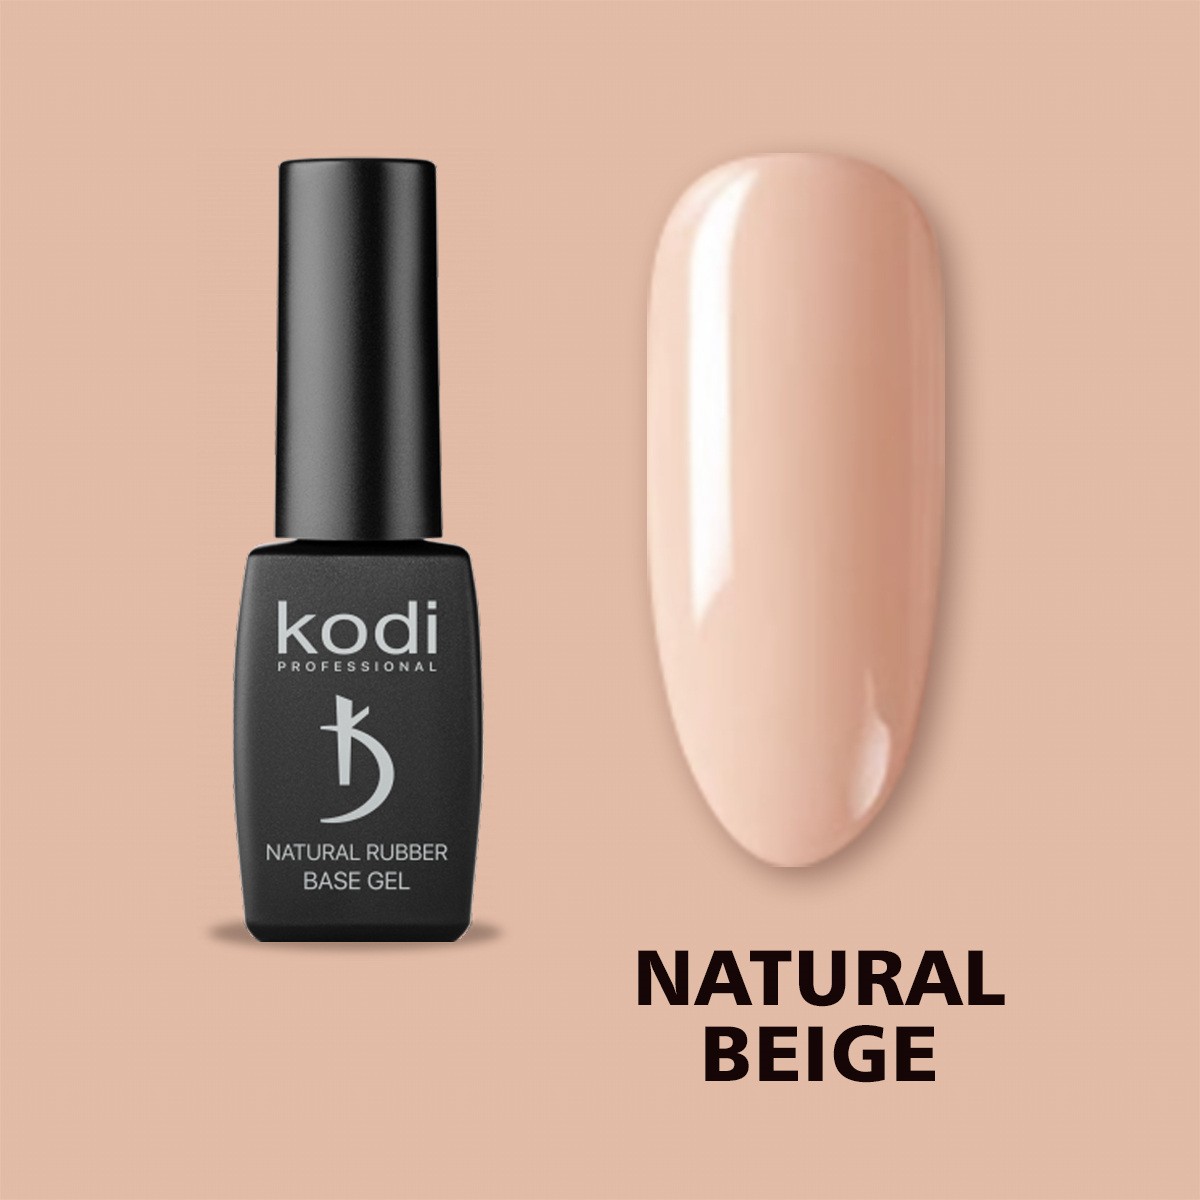 Kodi_natural_Rubber_Base_natural-beige_2.jpg